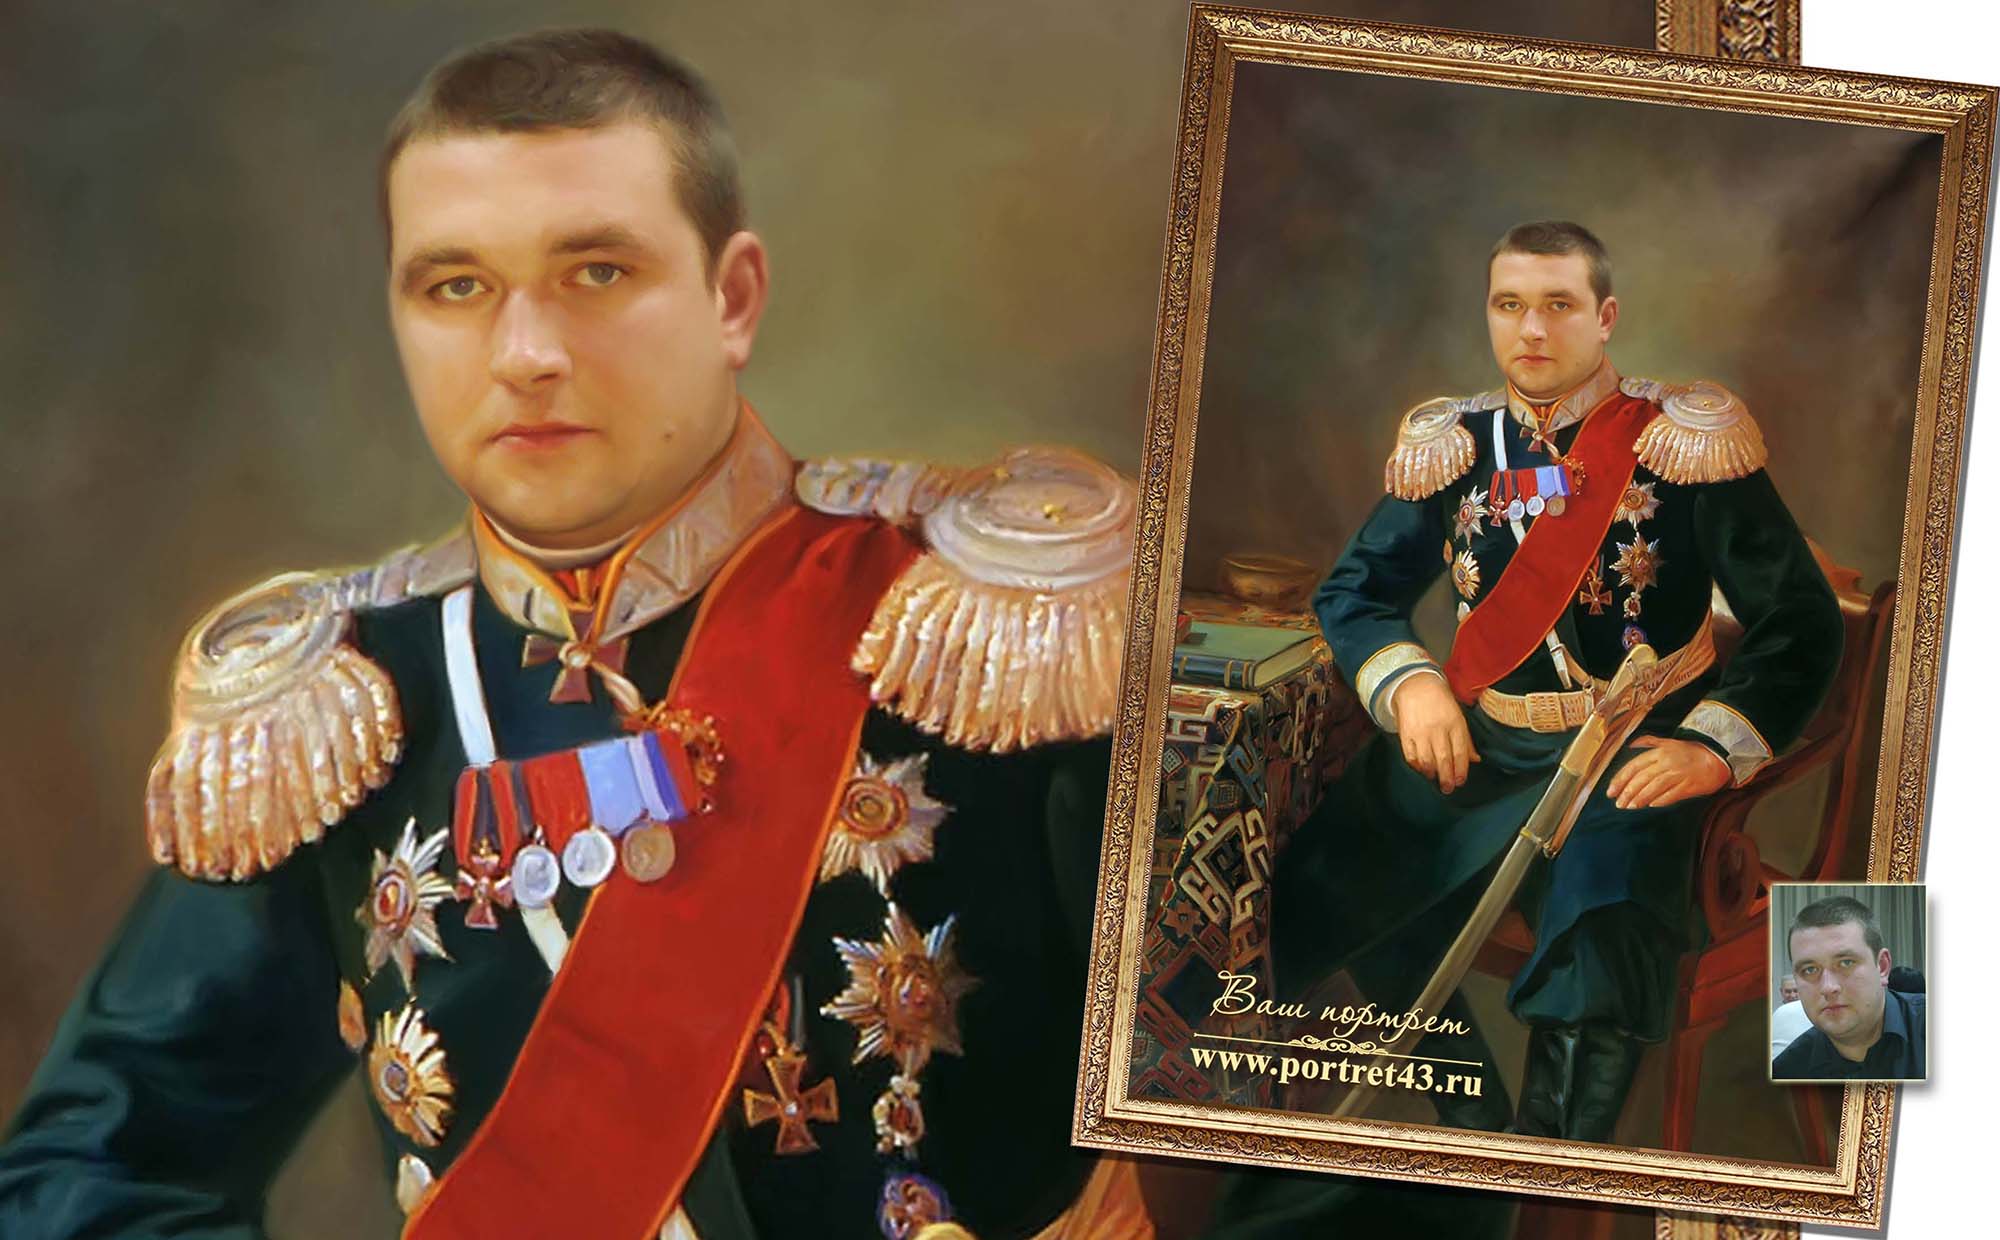 Примеры компании Картина43, портреты на заказ в Кирове